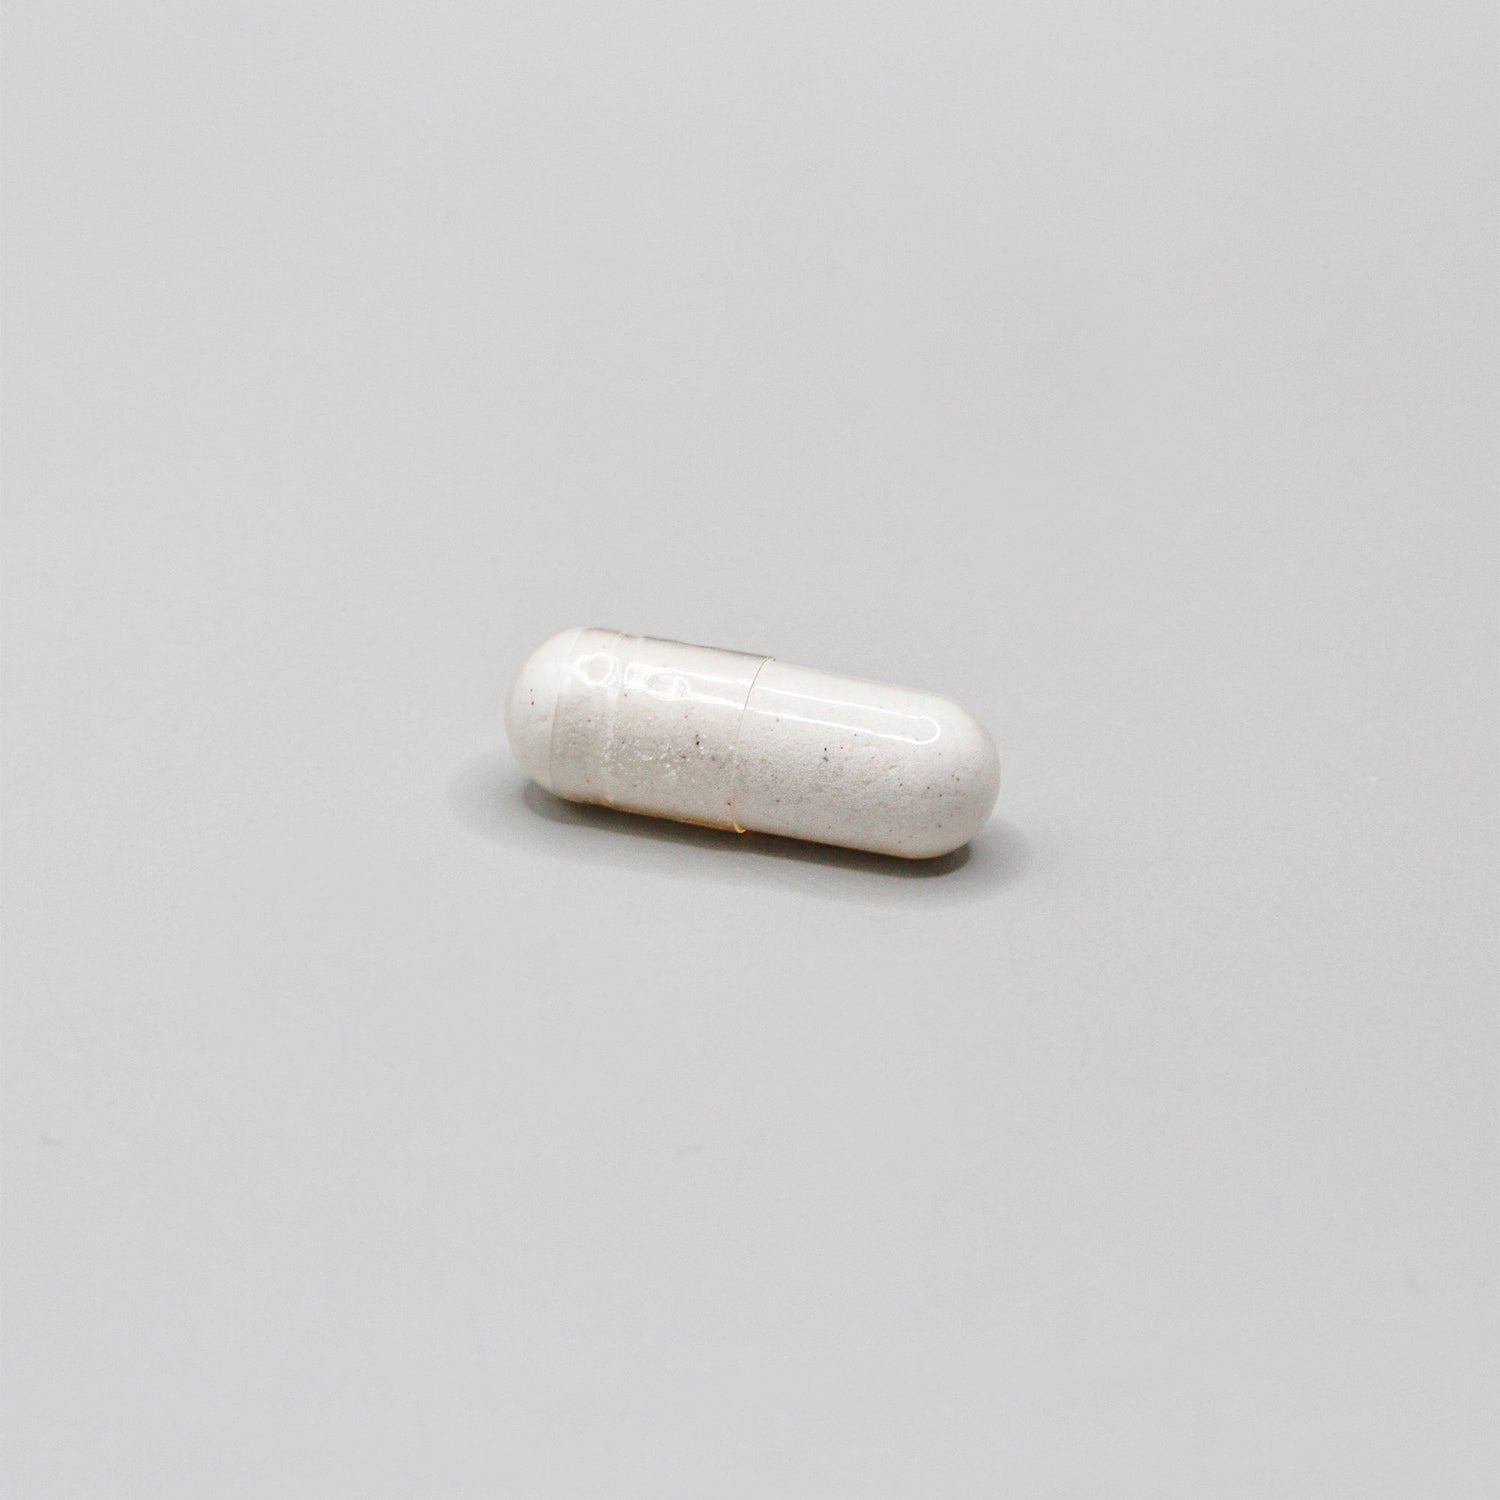 A white pill